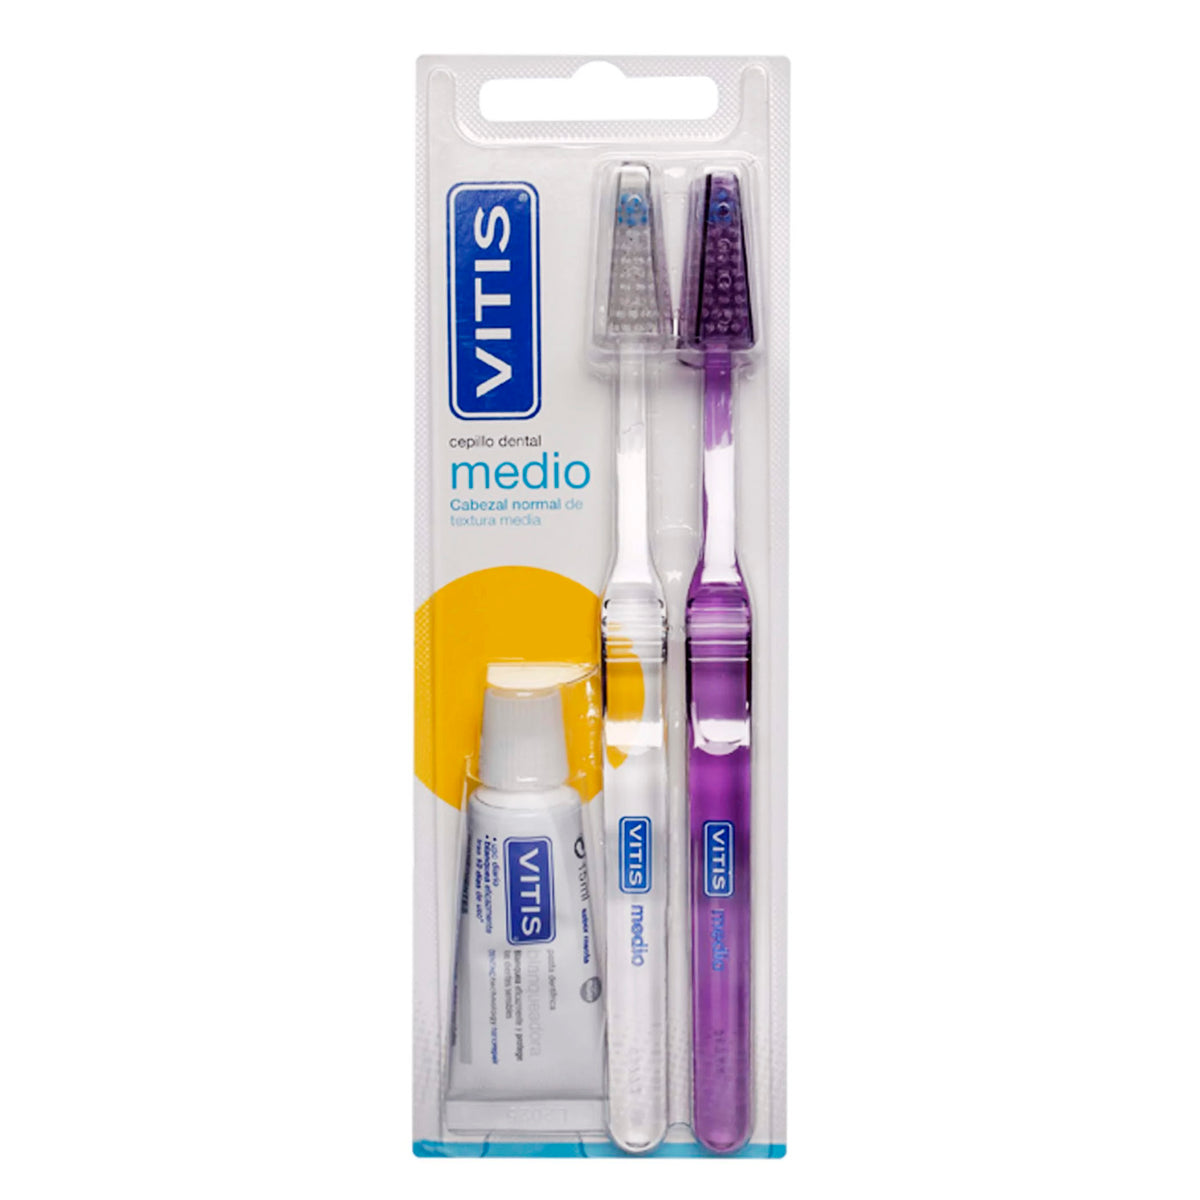 Vitis Pack Cepillo Dental Medio.